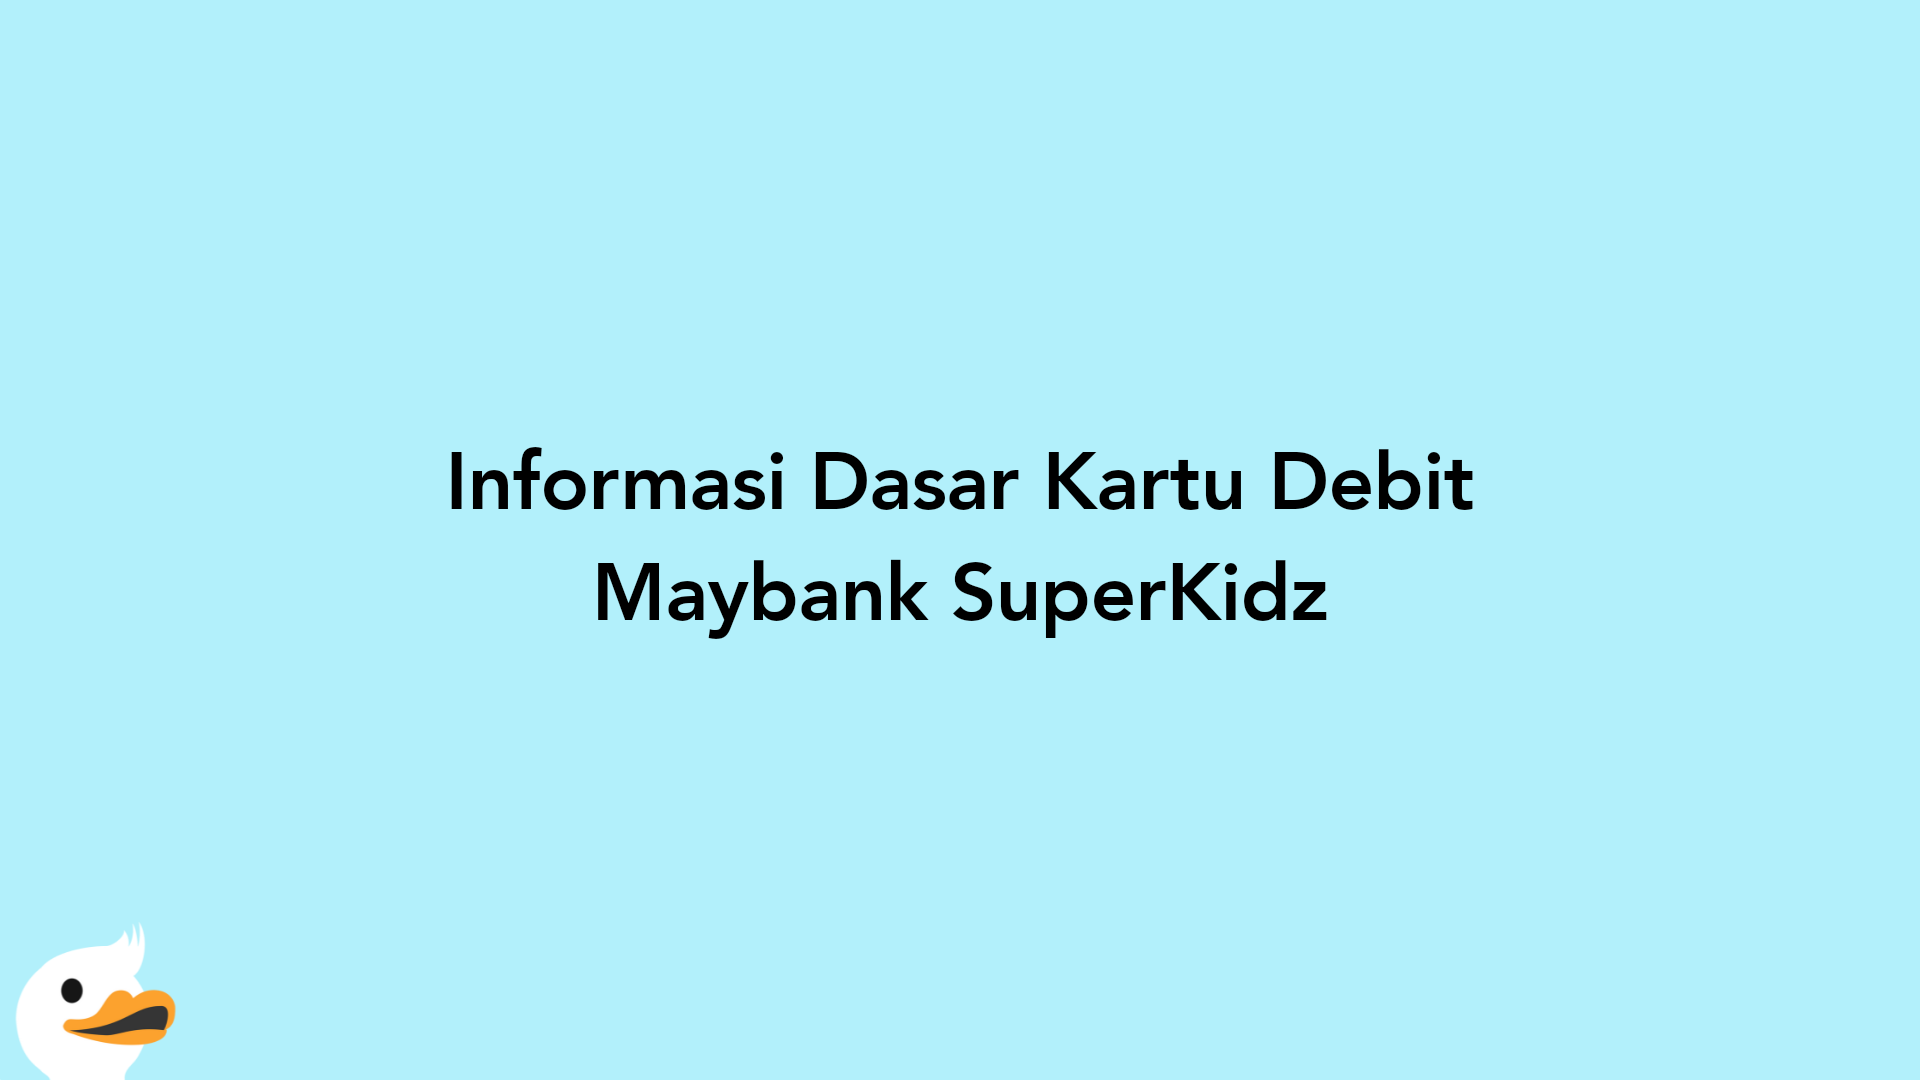 Informasi Dasar Kartu Debit Maybank SuperKidz